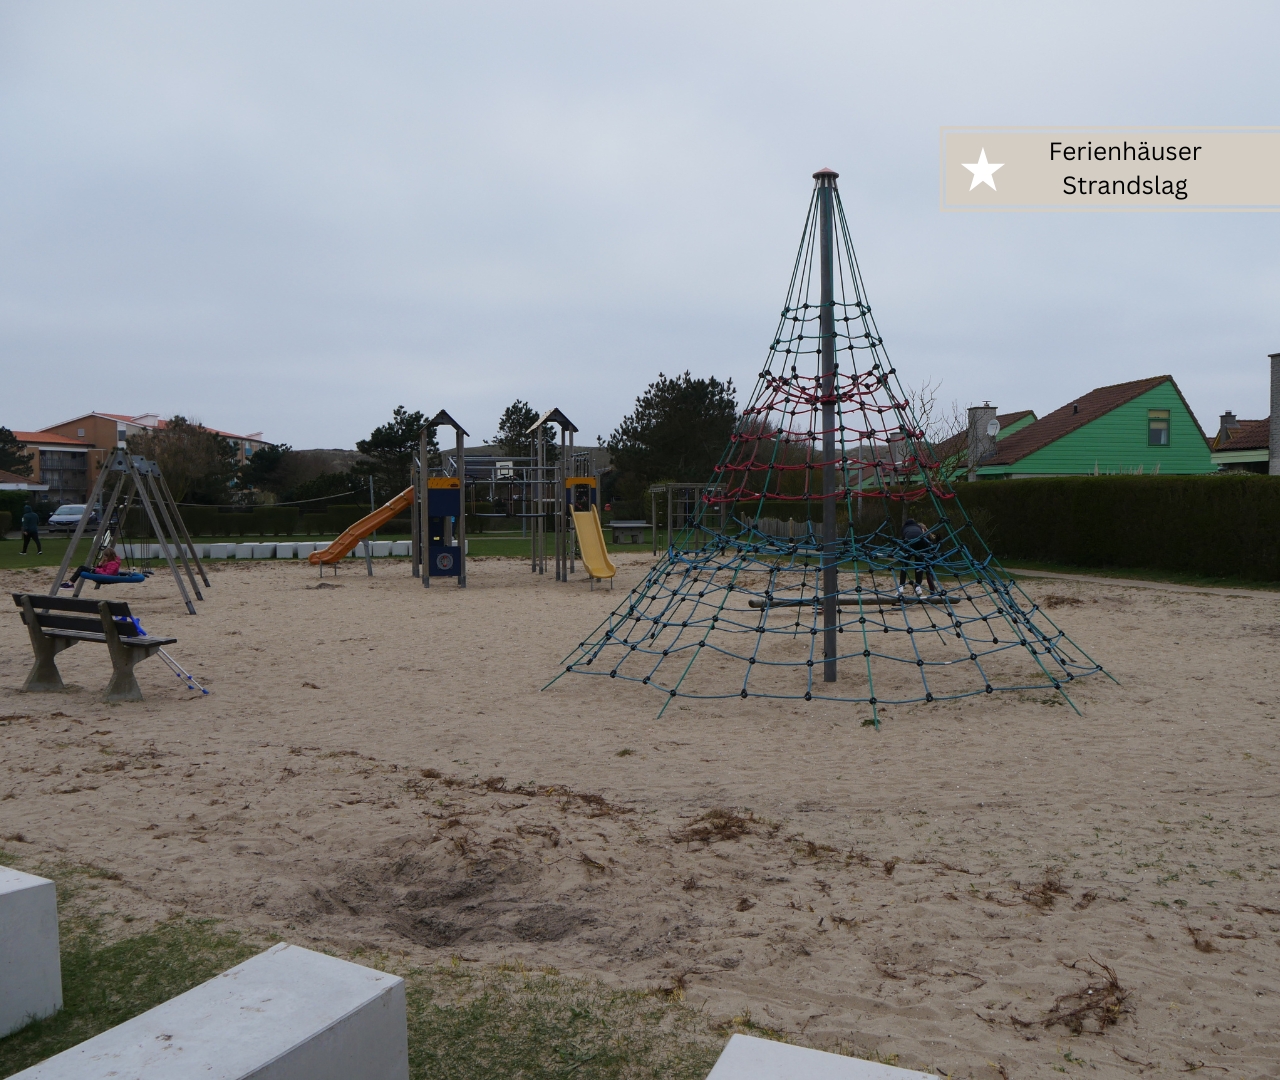 Beste Ferienhäuser in Julianadorp - Strandslag Ferienhaus am Spielplatz (1)